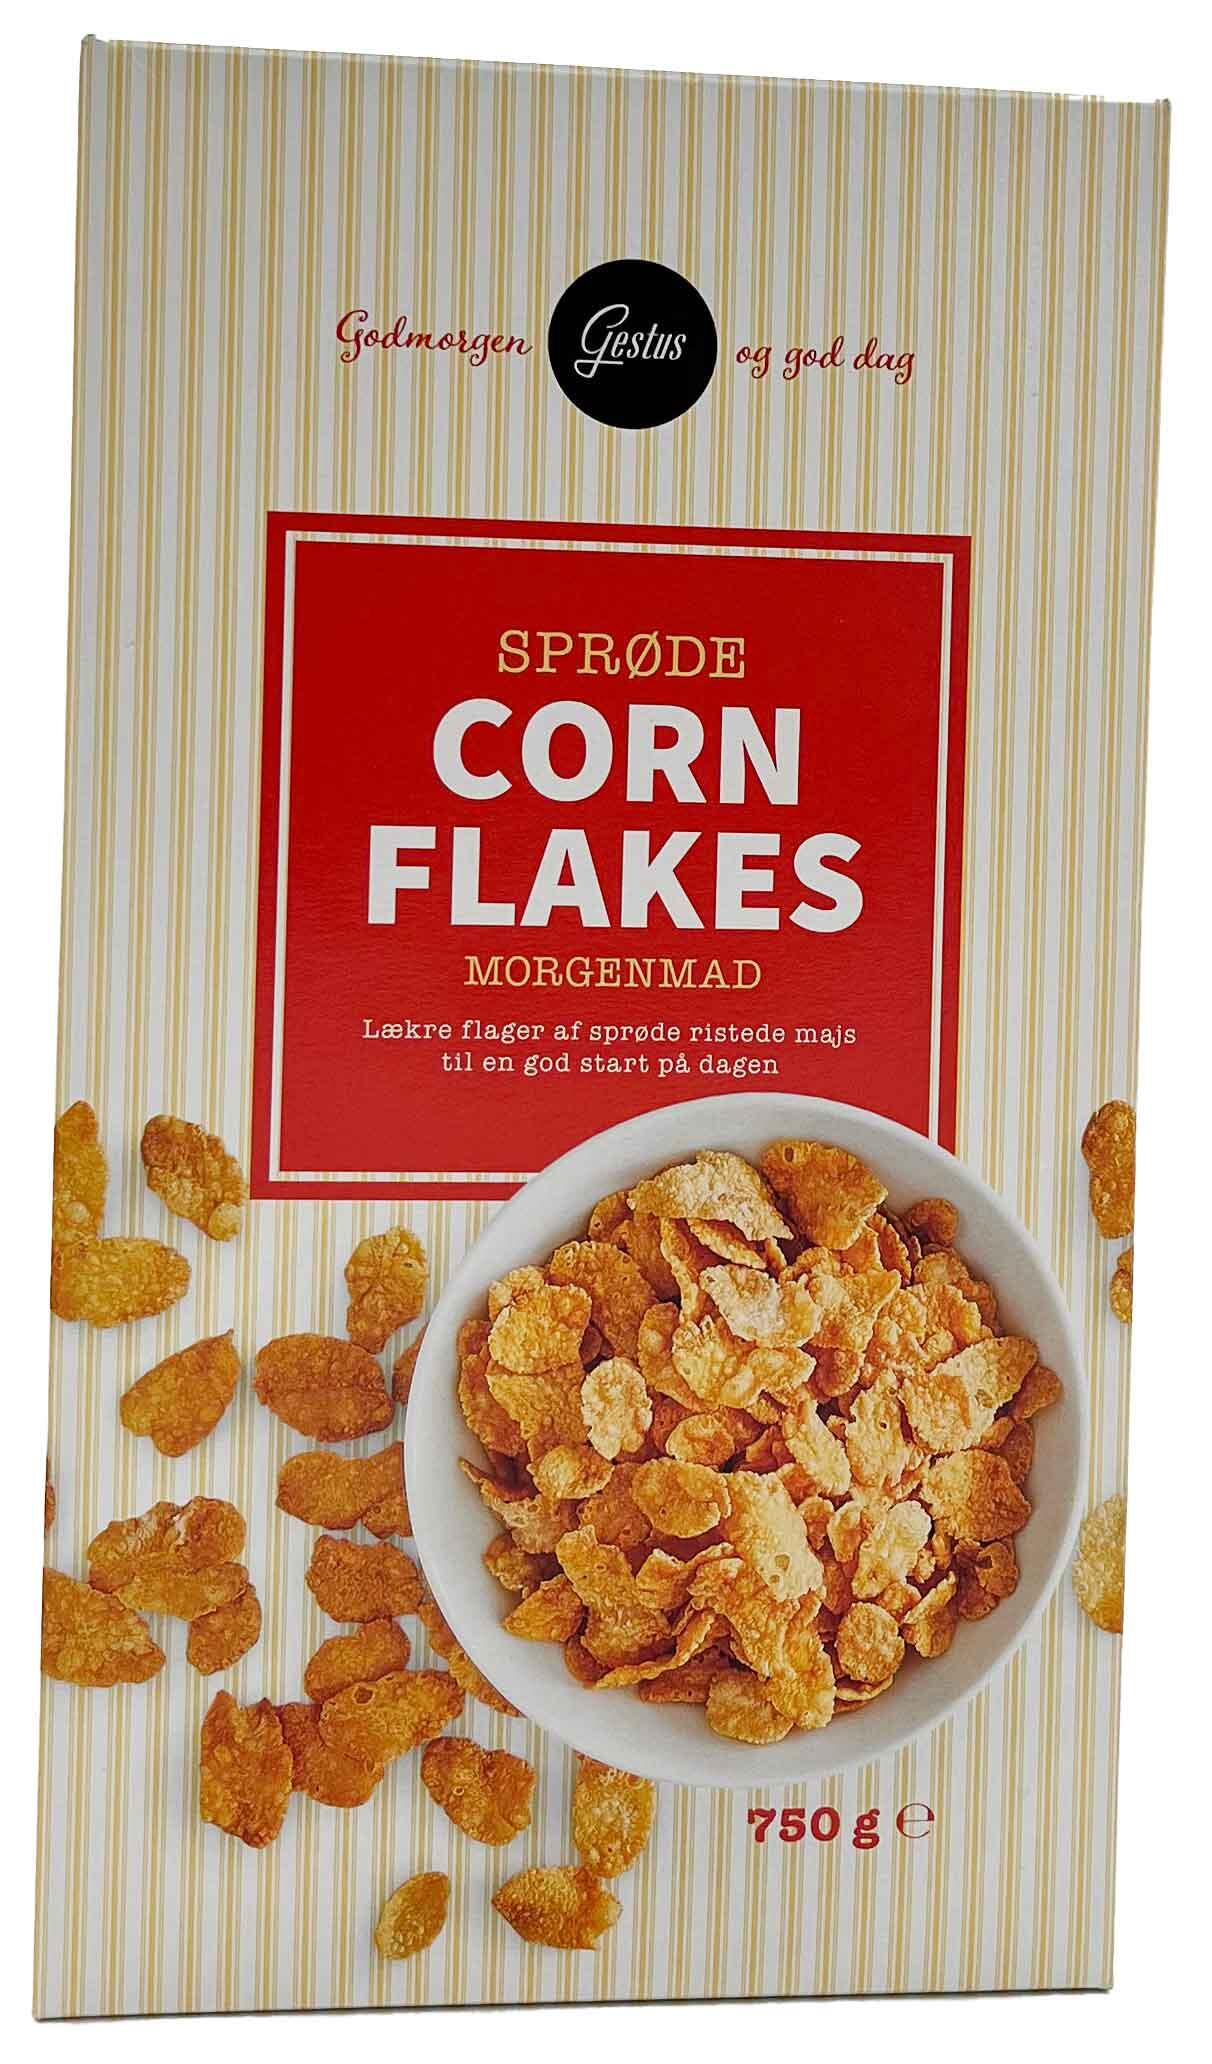 Sprøde Corn Flakes morgenmad Gestus